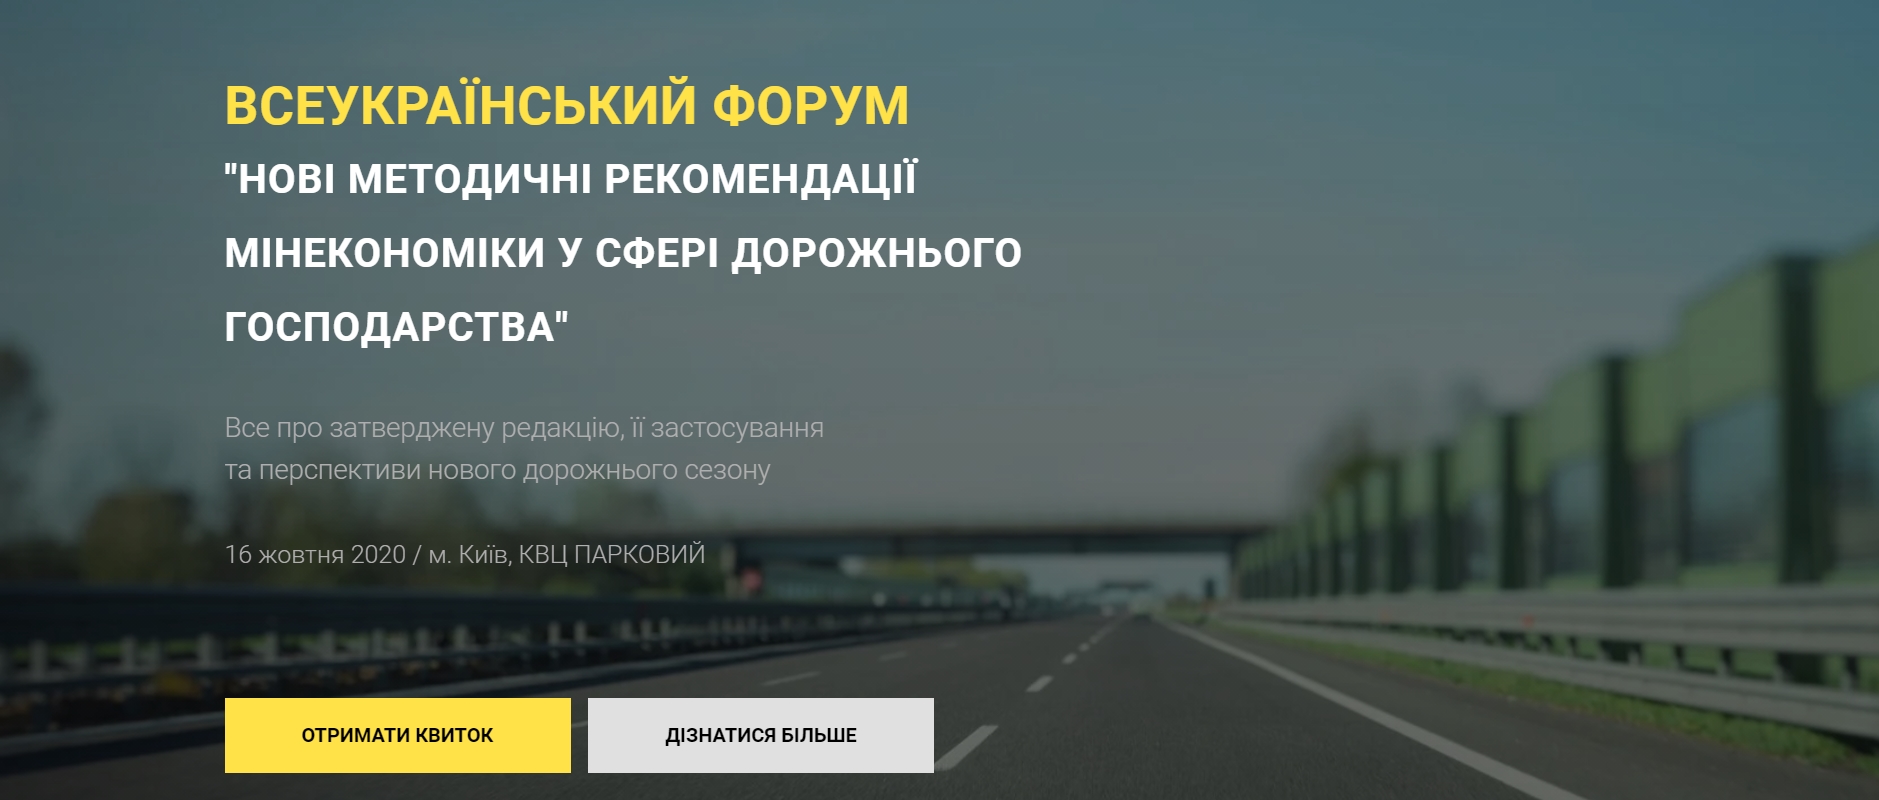 https://roadforum.com.ua/